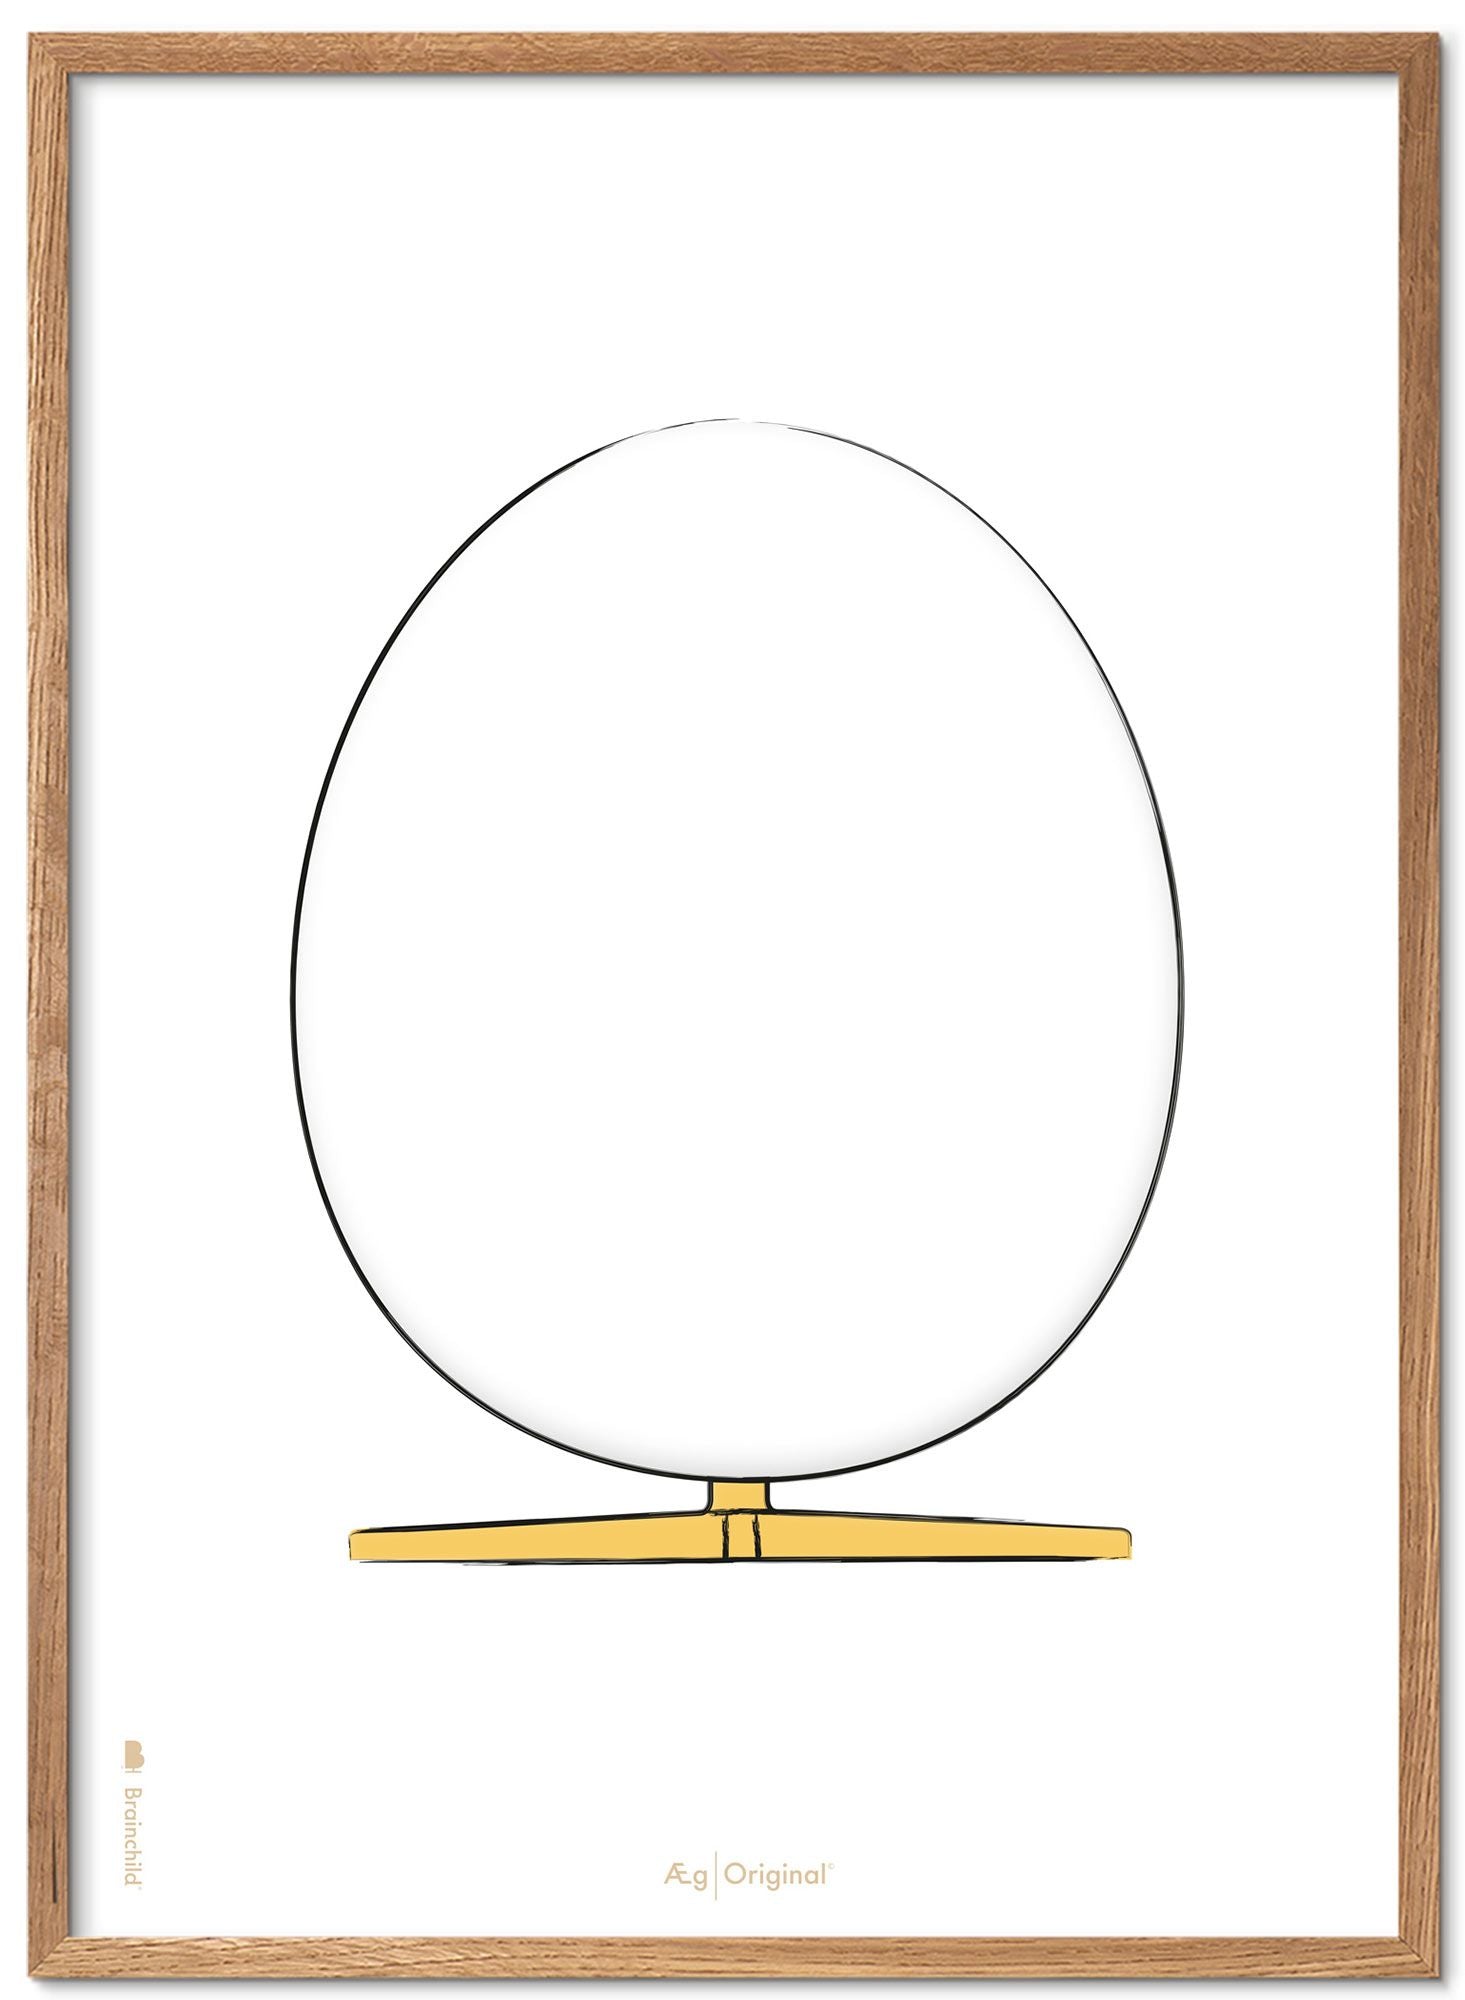 Affiche de croquis de conception des œufs